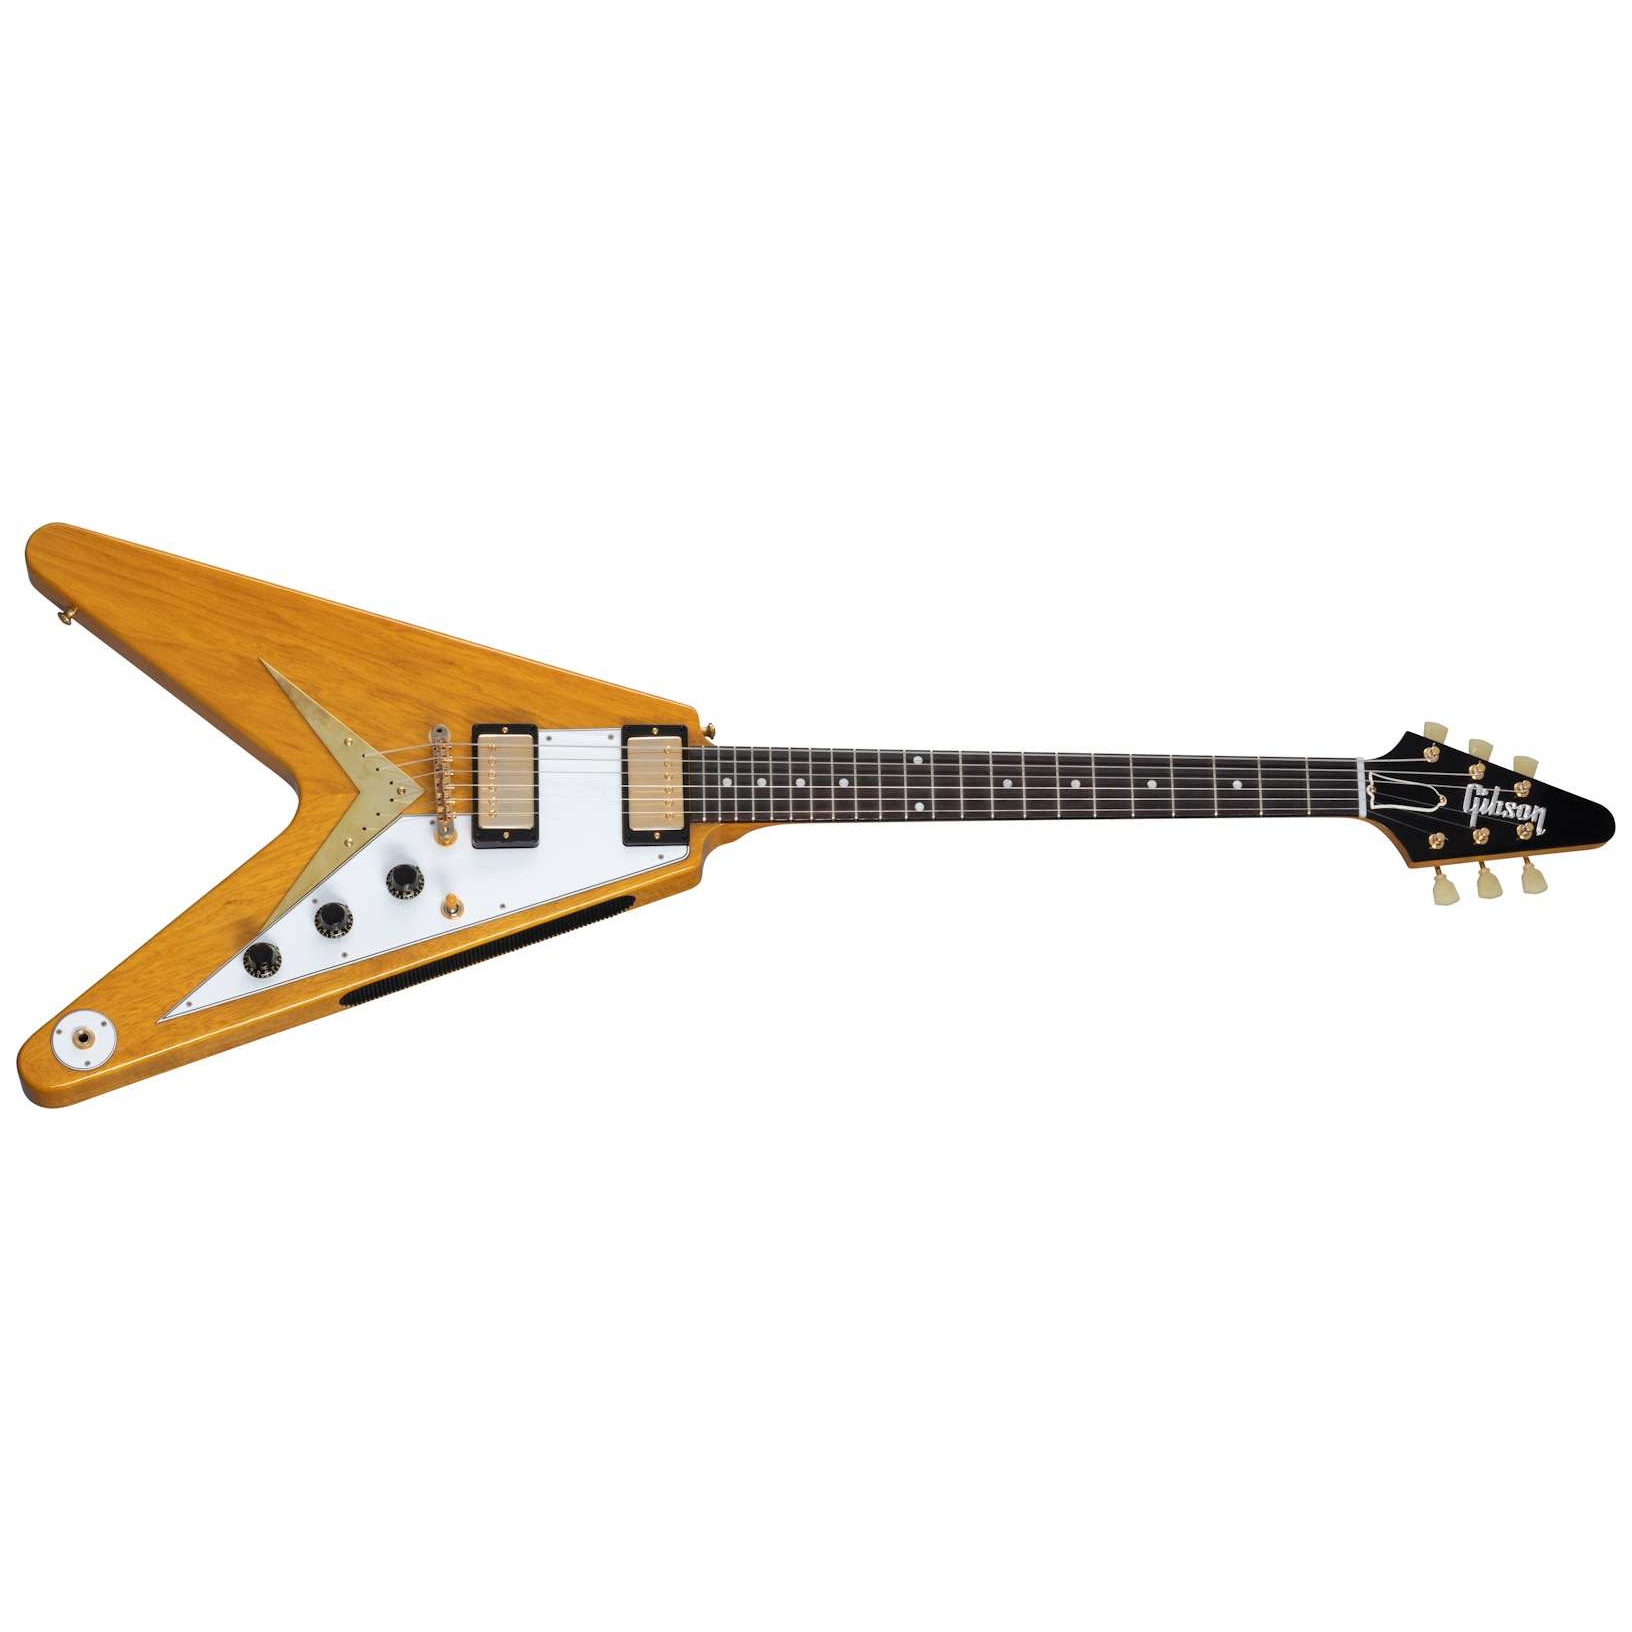 Gibson 58 Korina Flying V White Pickguard Natural VOS GH